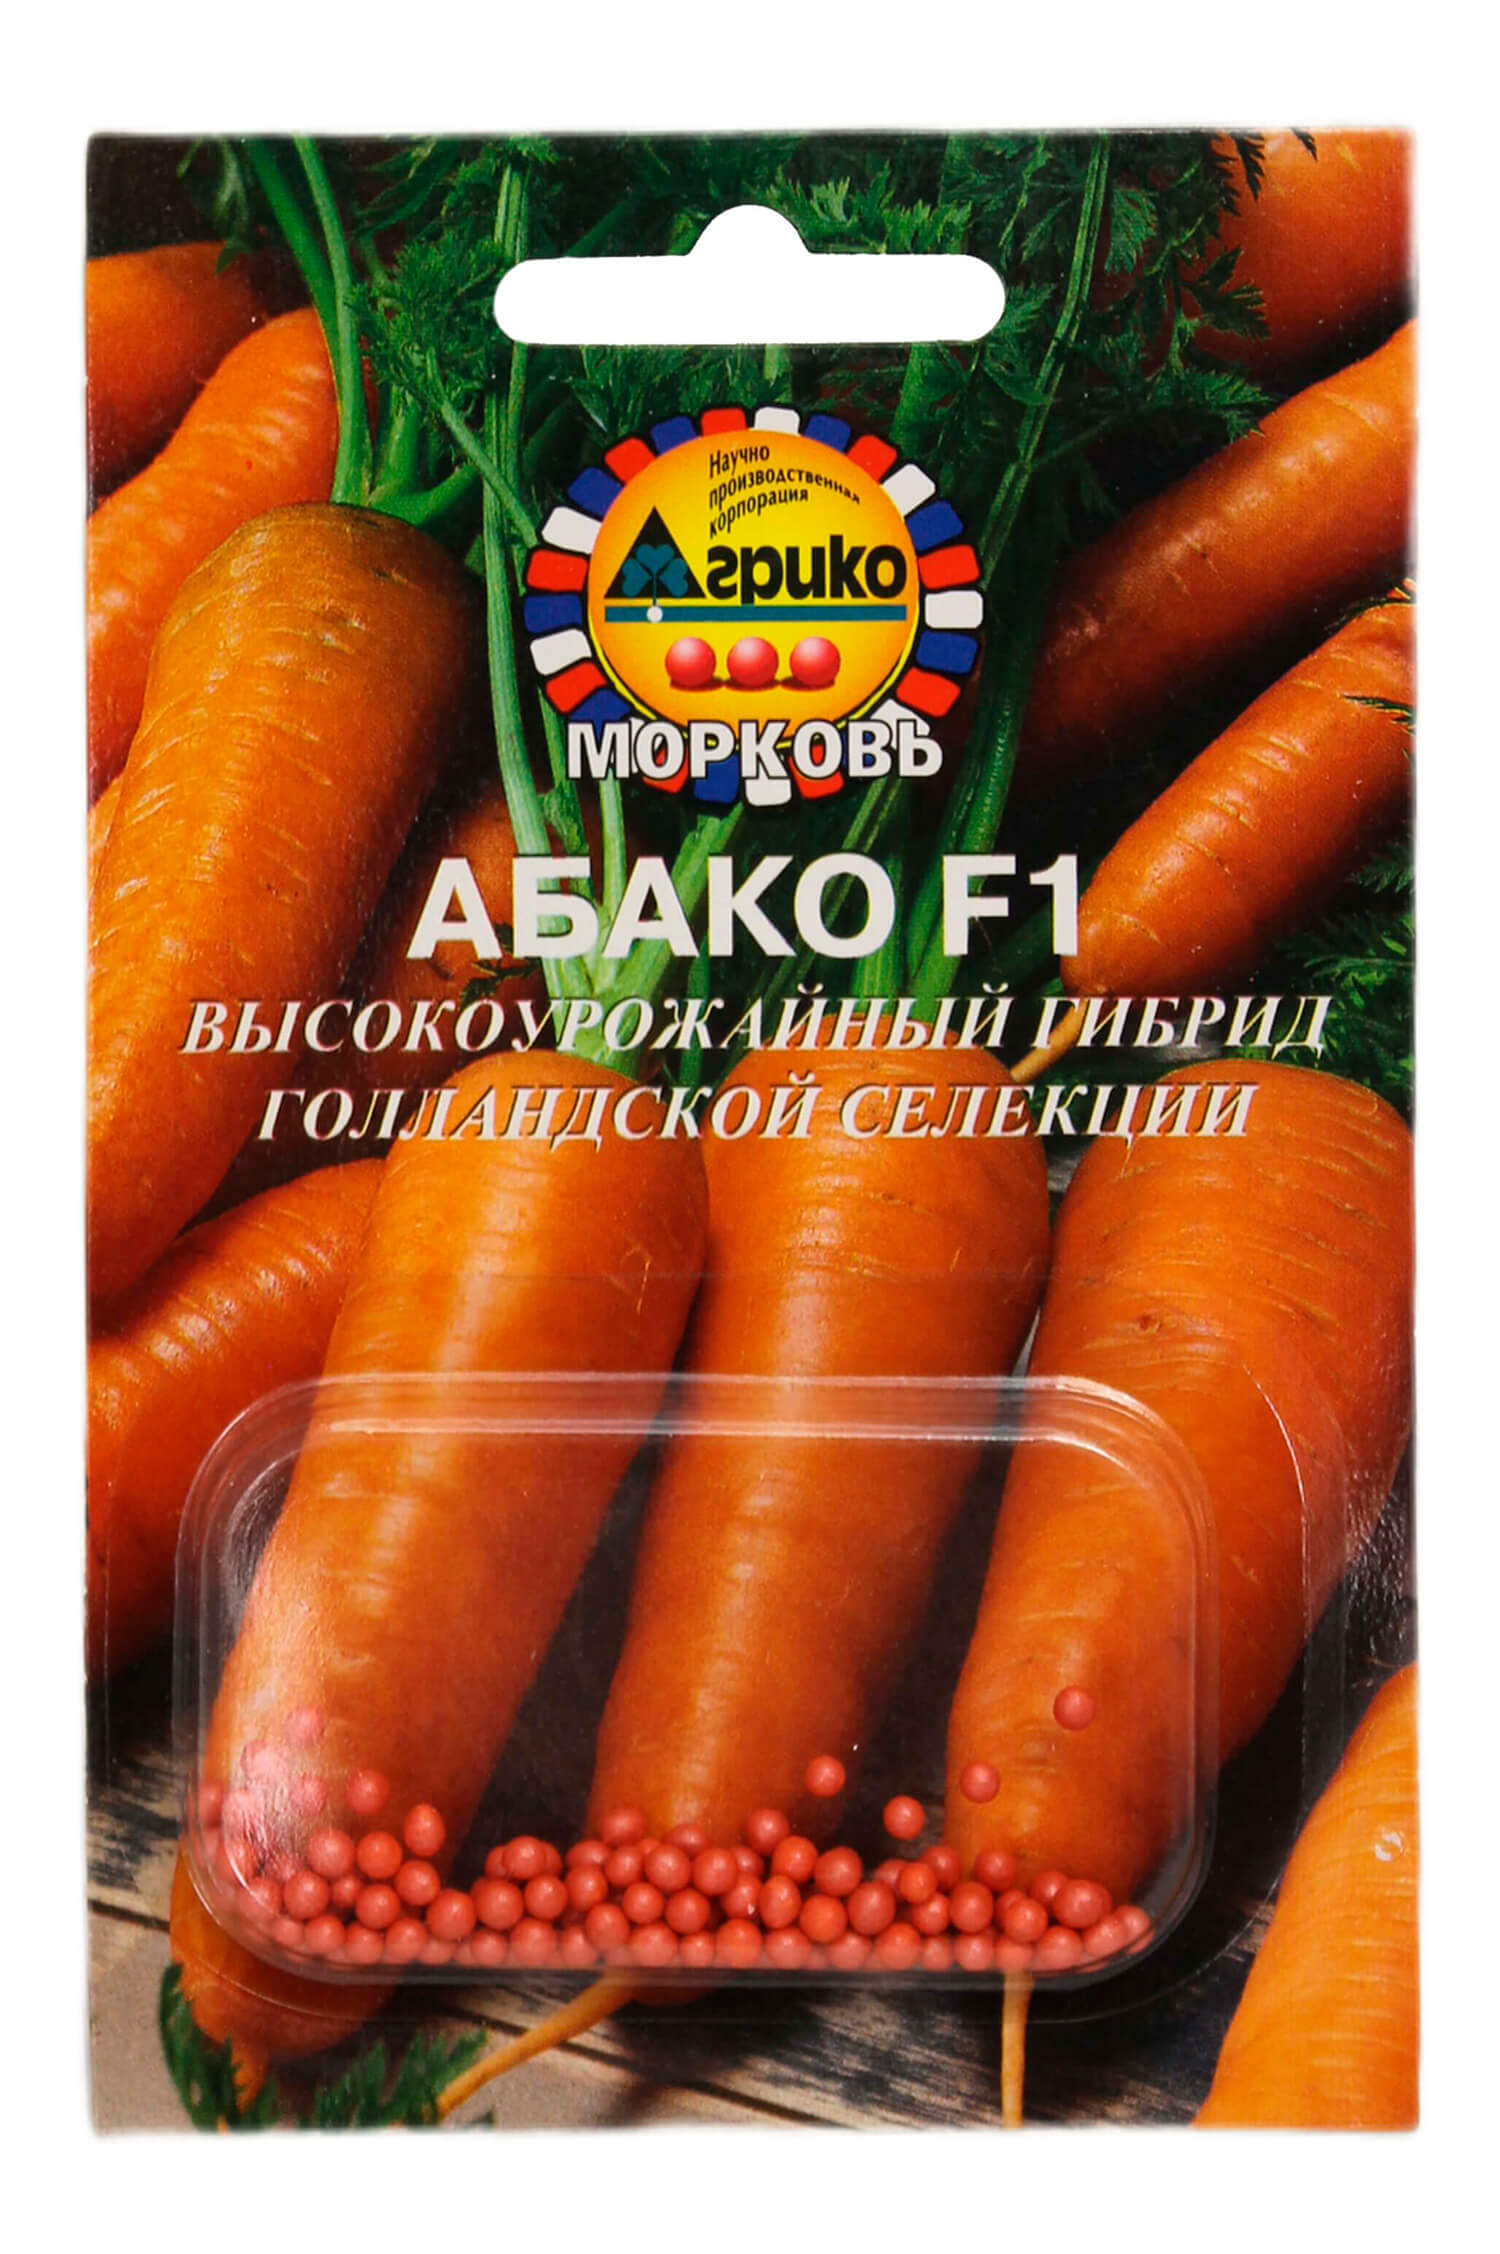 morkovkatalog/abako-f1-2-agriko-rv-morkov-semena4677.jpg